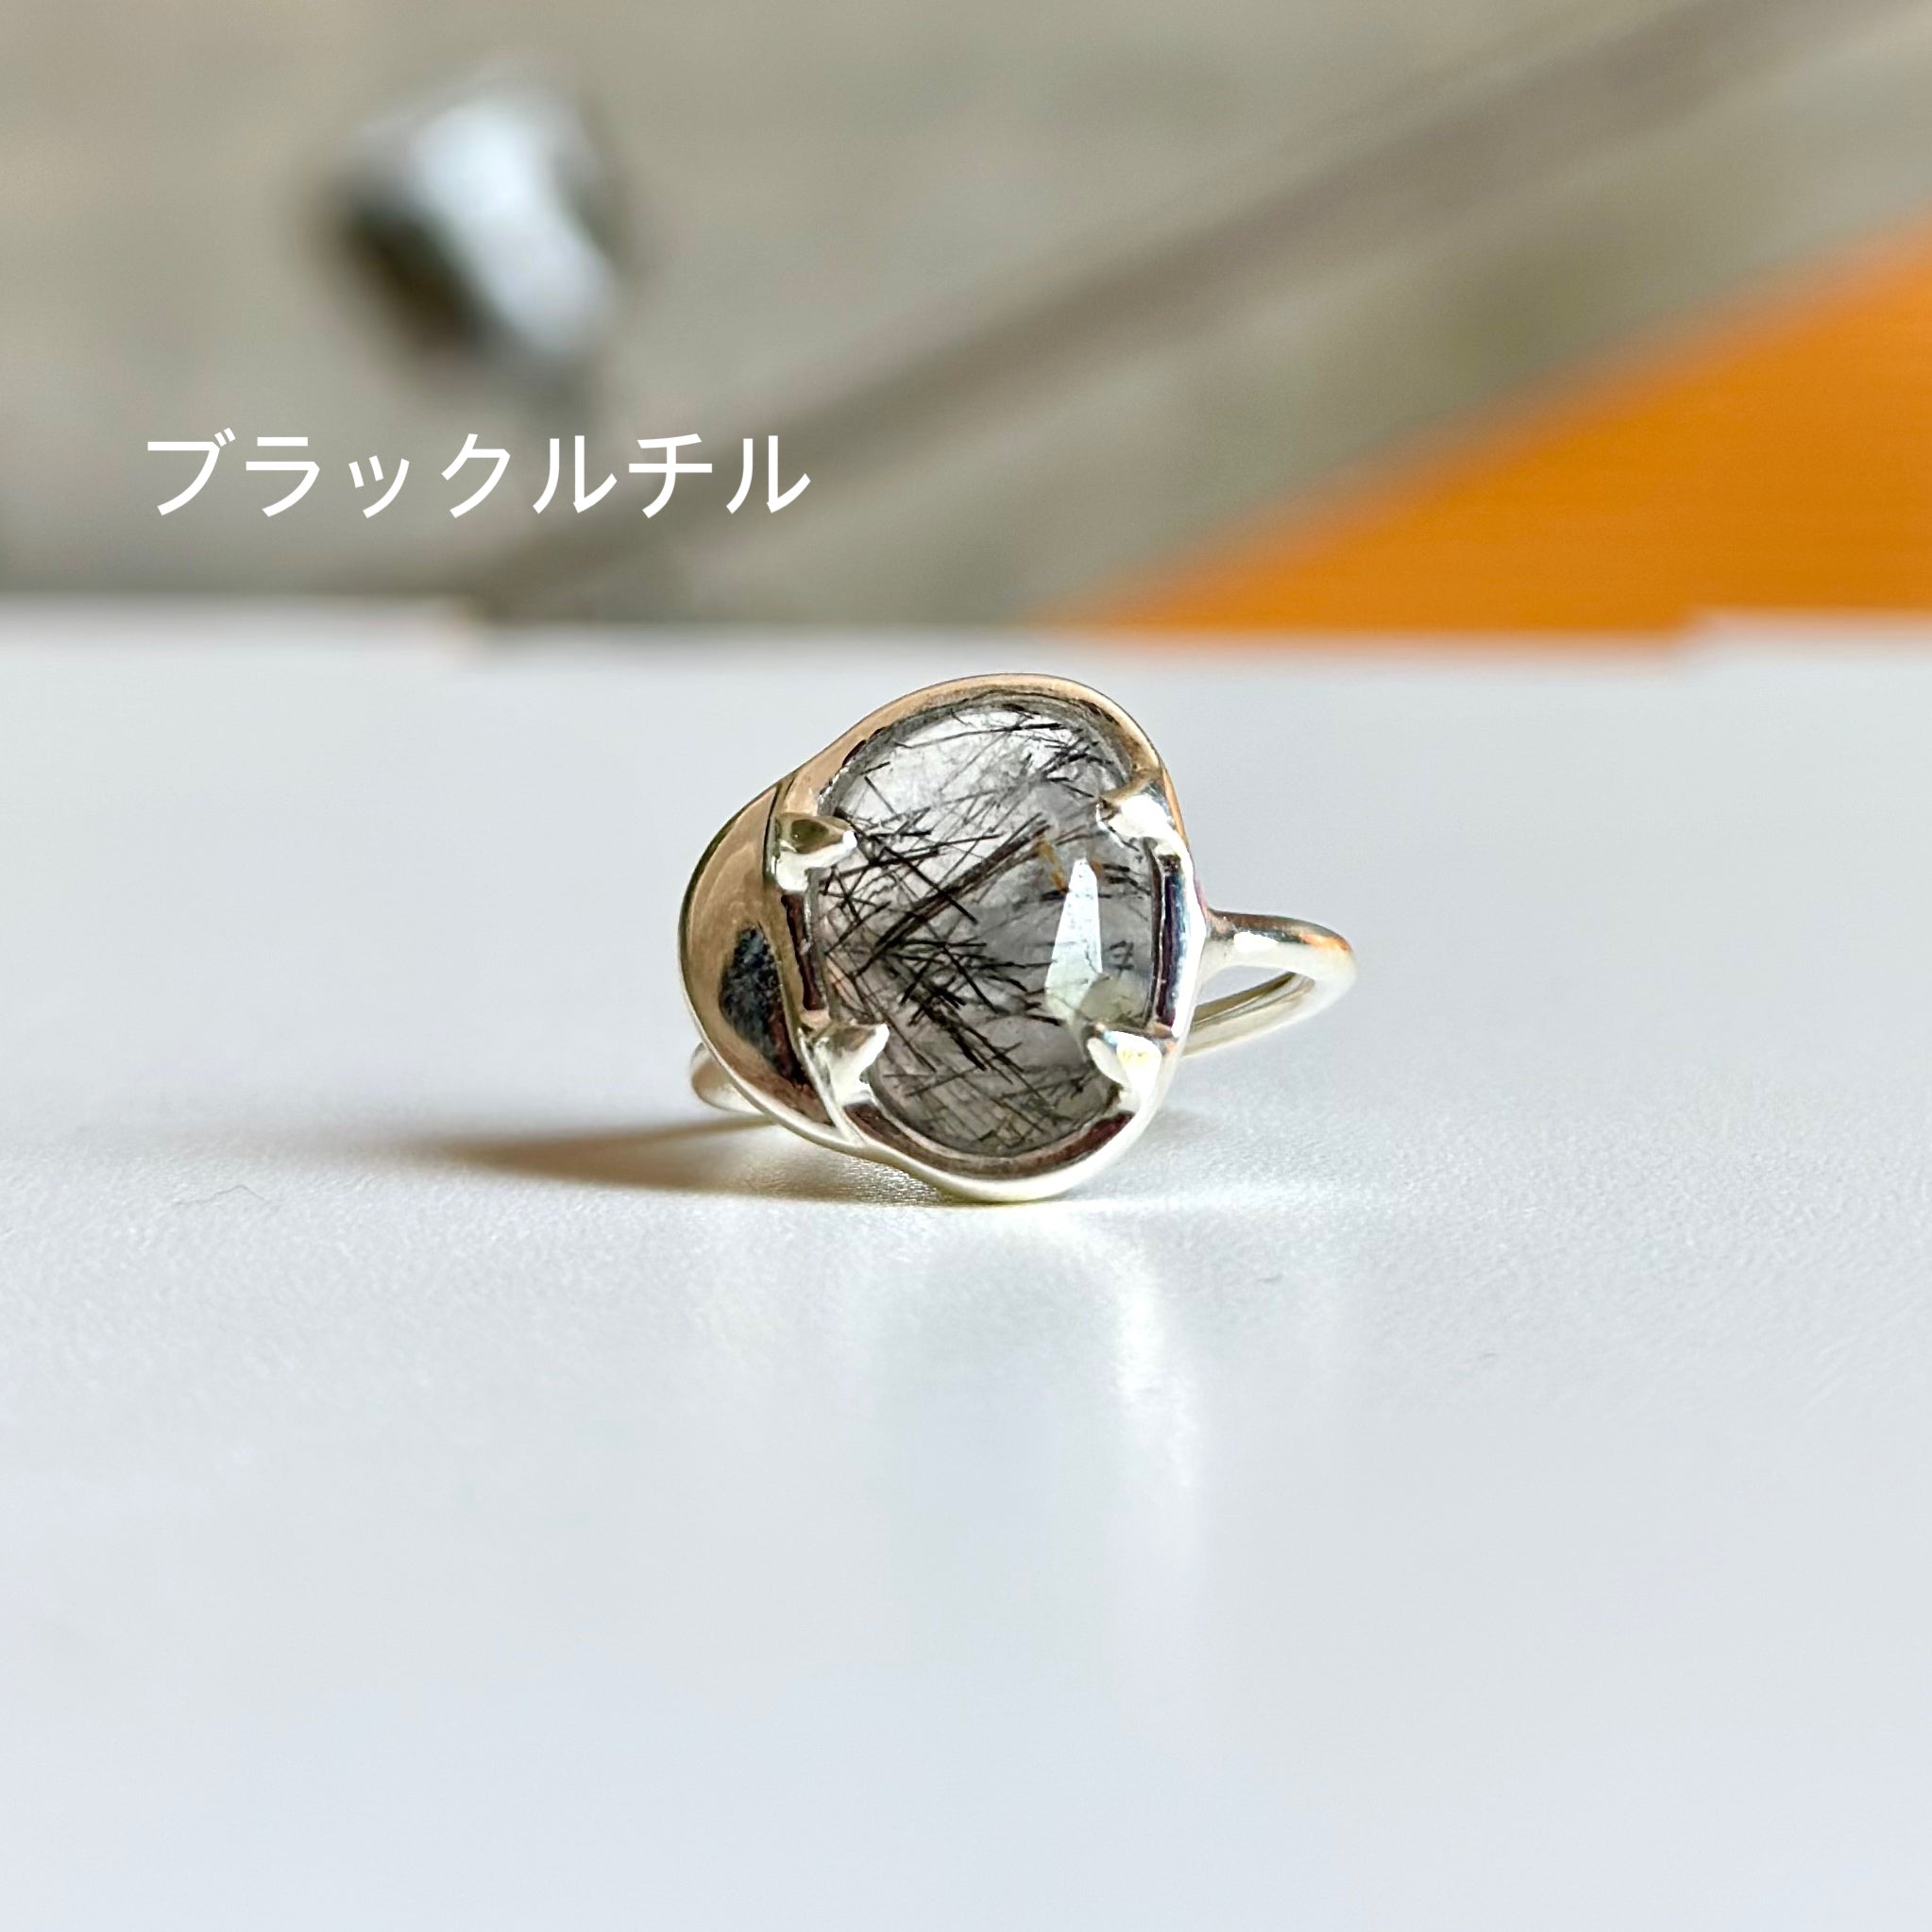 Silver925 design ring 8 – Biju mam